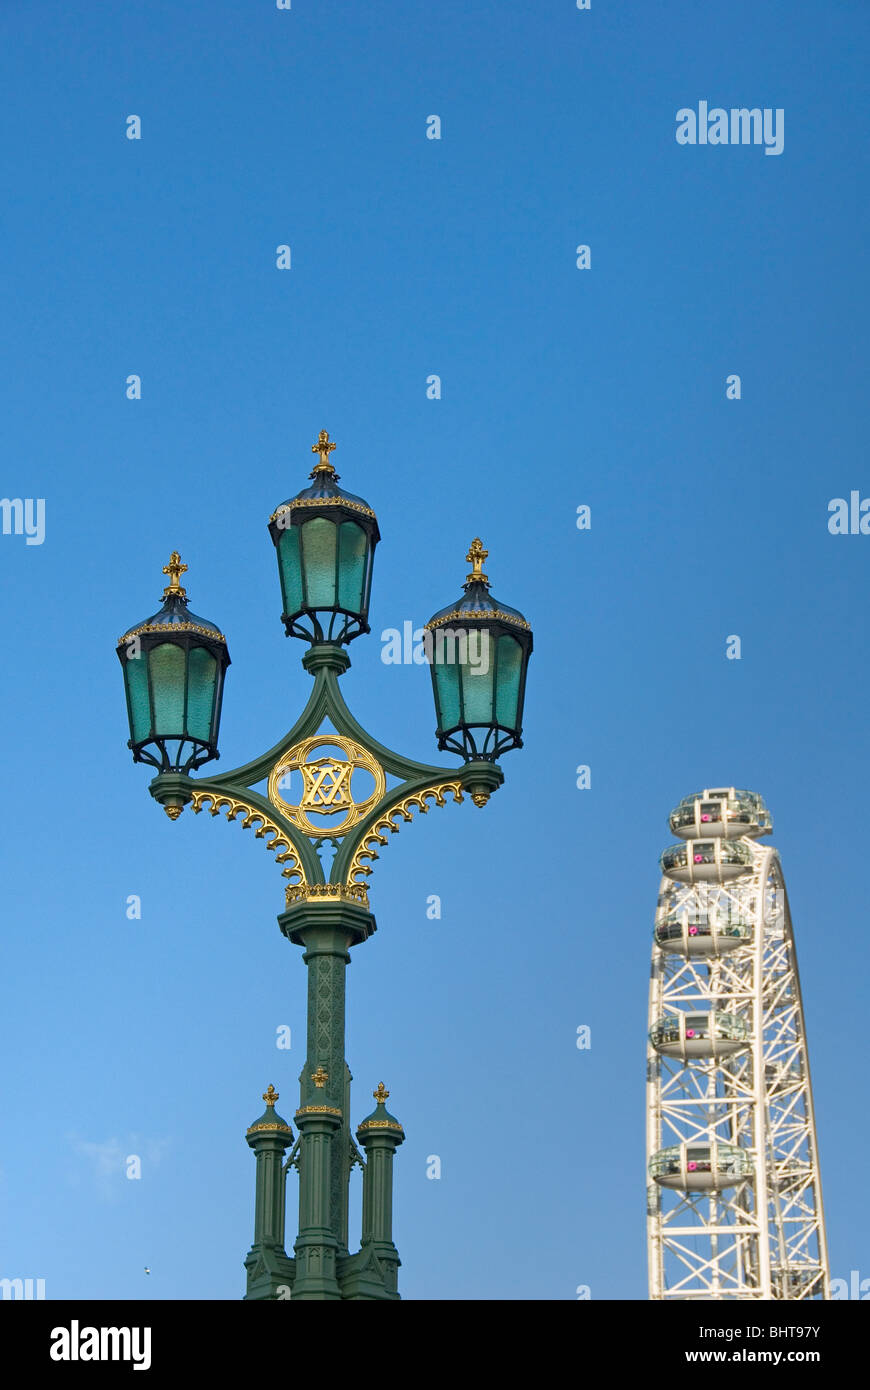 Alten Straßenlaterne und das London Eye, Millennium Wheel, Riesenrad, London, England, Vereinigtes Königreich, Europa Stockfoto